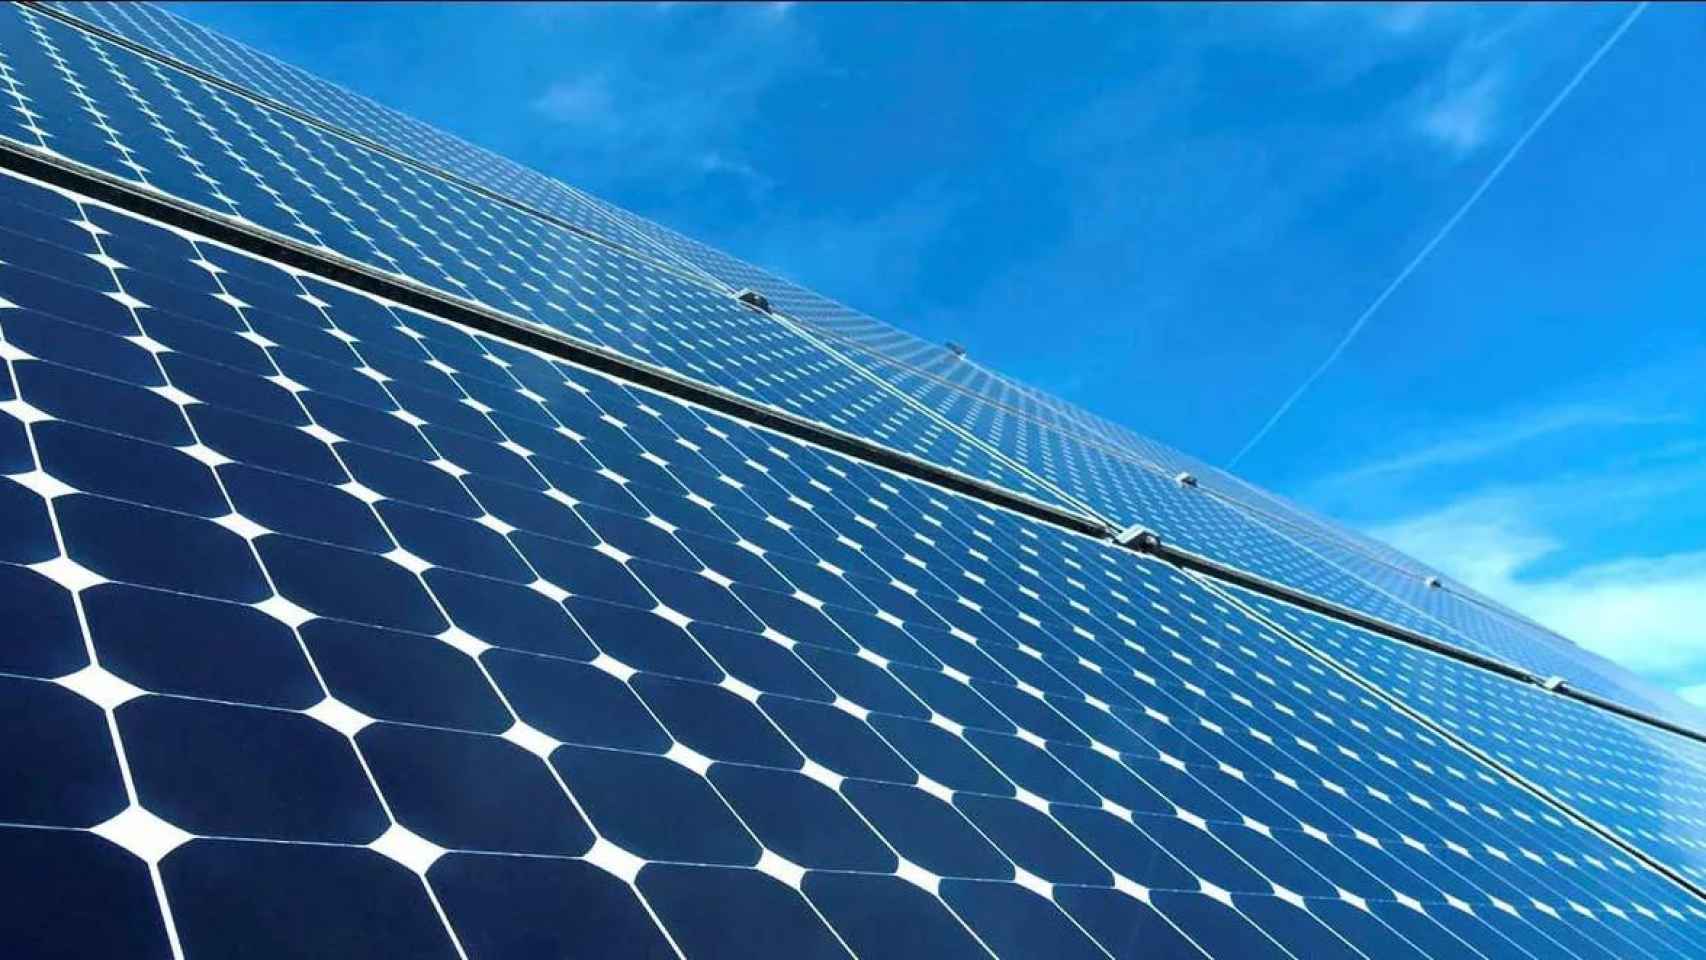 Instalación de placas solares, base de la energía fotovoltaica en la que se centra el negocio de Enerside Energy